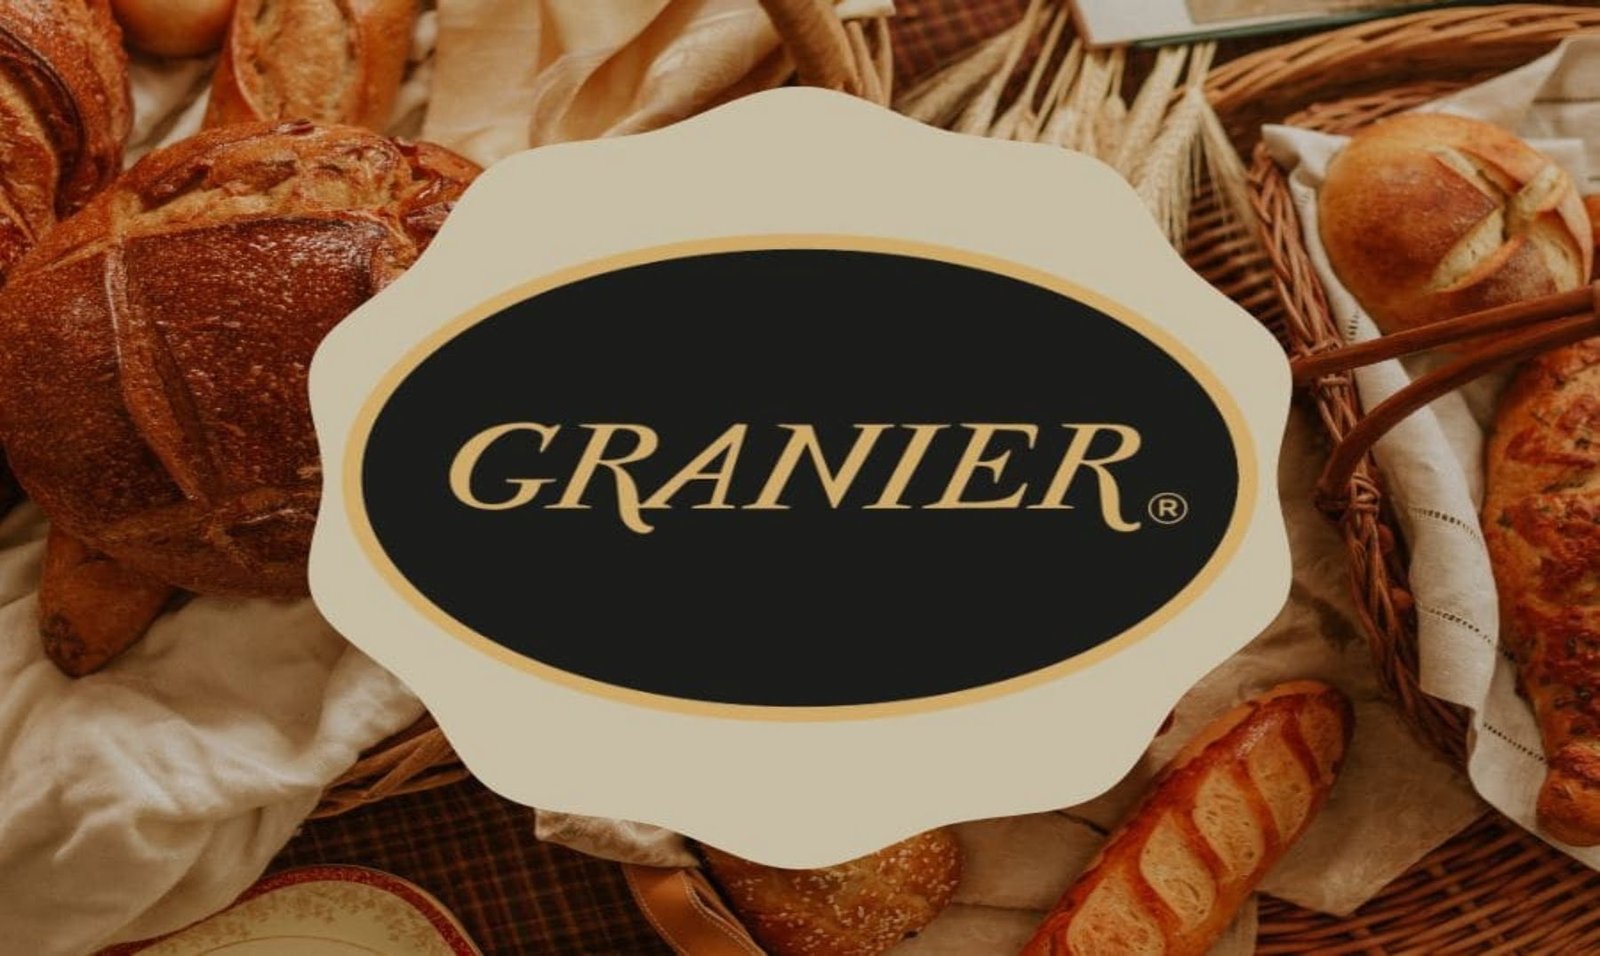 Franquicia Granier | ¡El arte y la fórmula secreta del pan recién hecho!